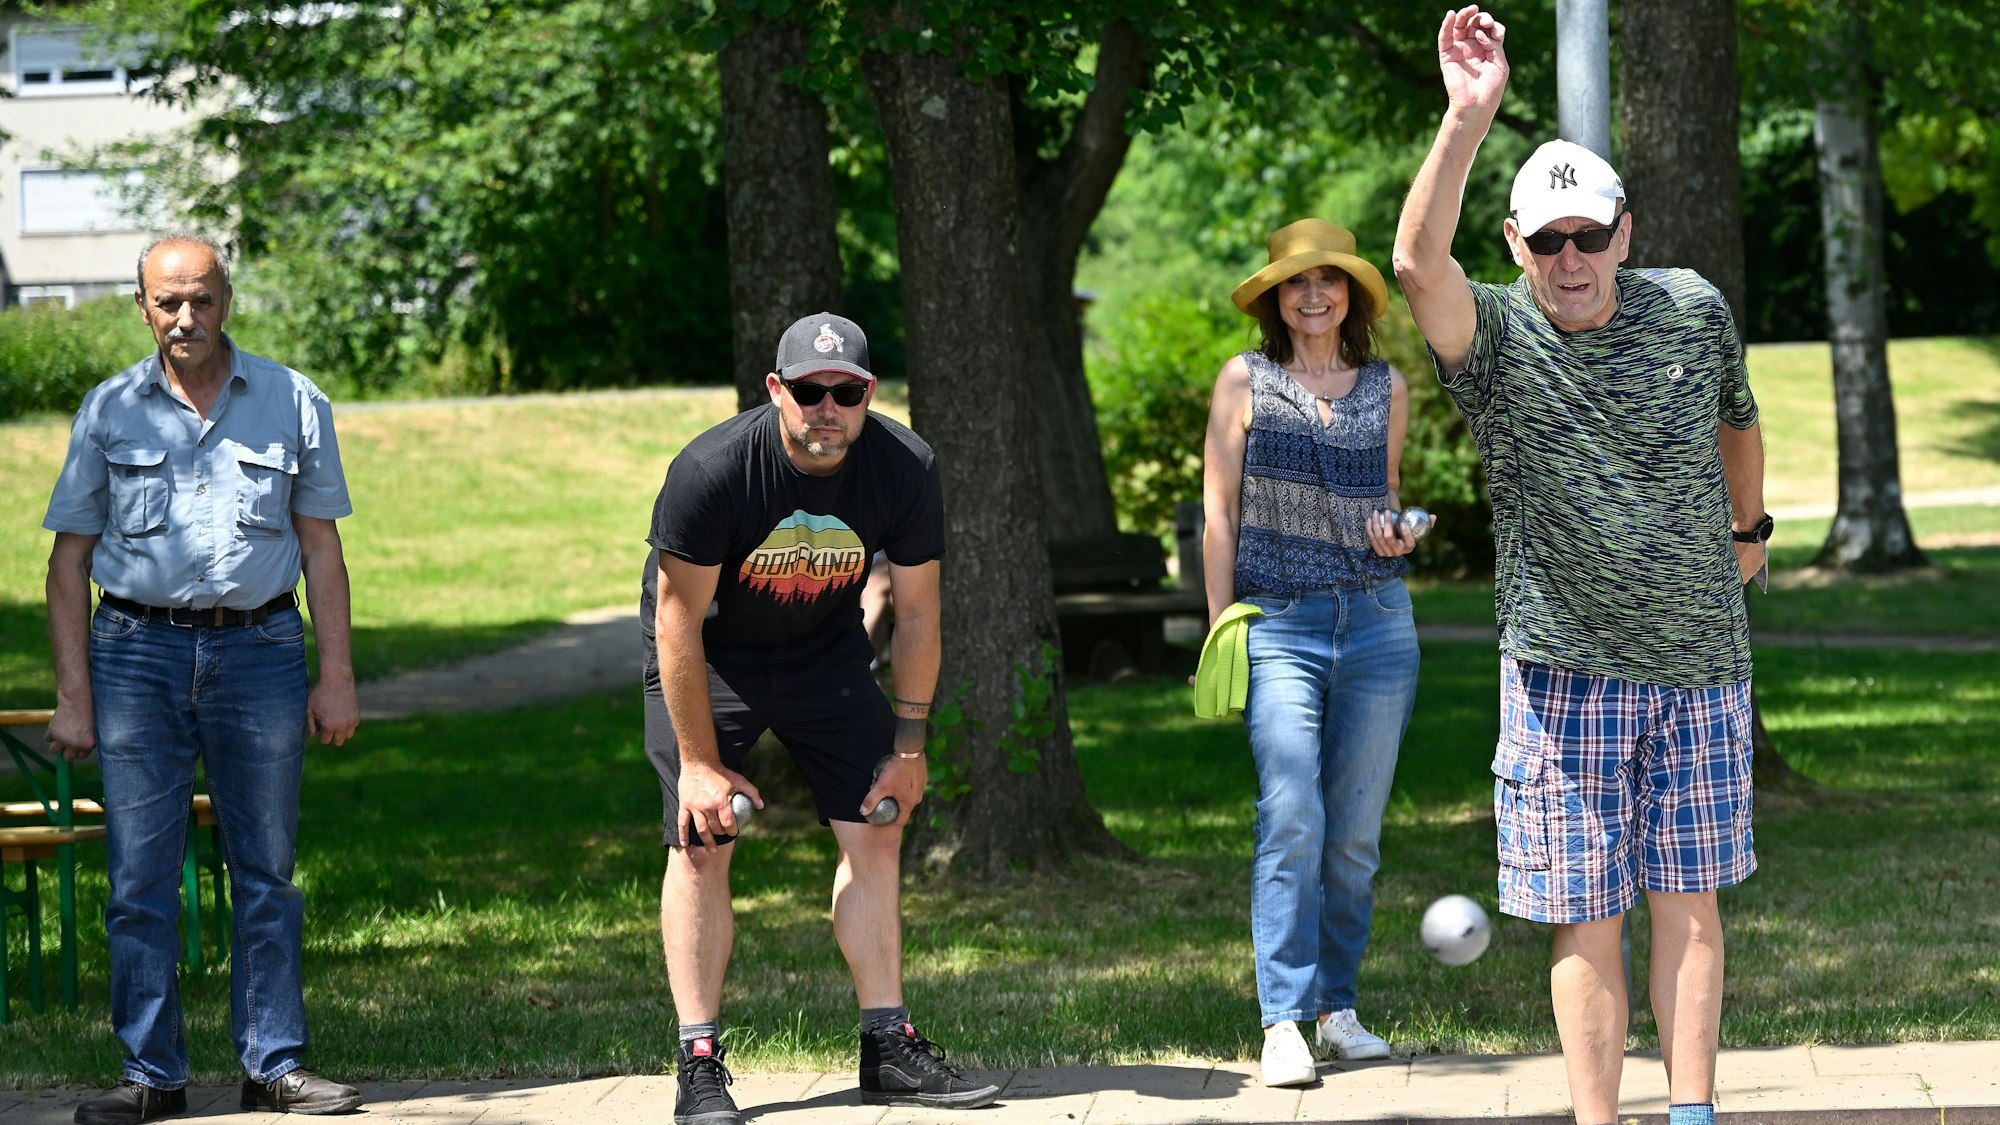 Zwei Männer mit Sonnenbrillen werfen Kugeln in einem Park, im Hintergrund steht eine Frau mit einem Hut und ein Mann.